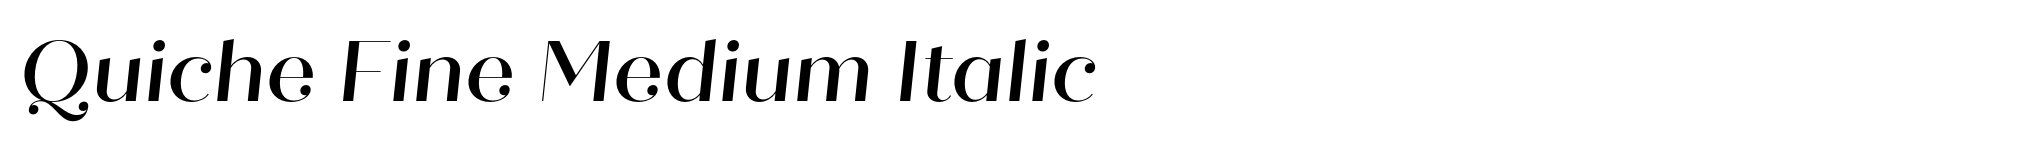 Quiche Fine Medium Italic image